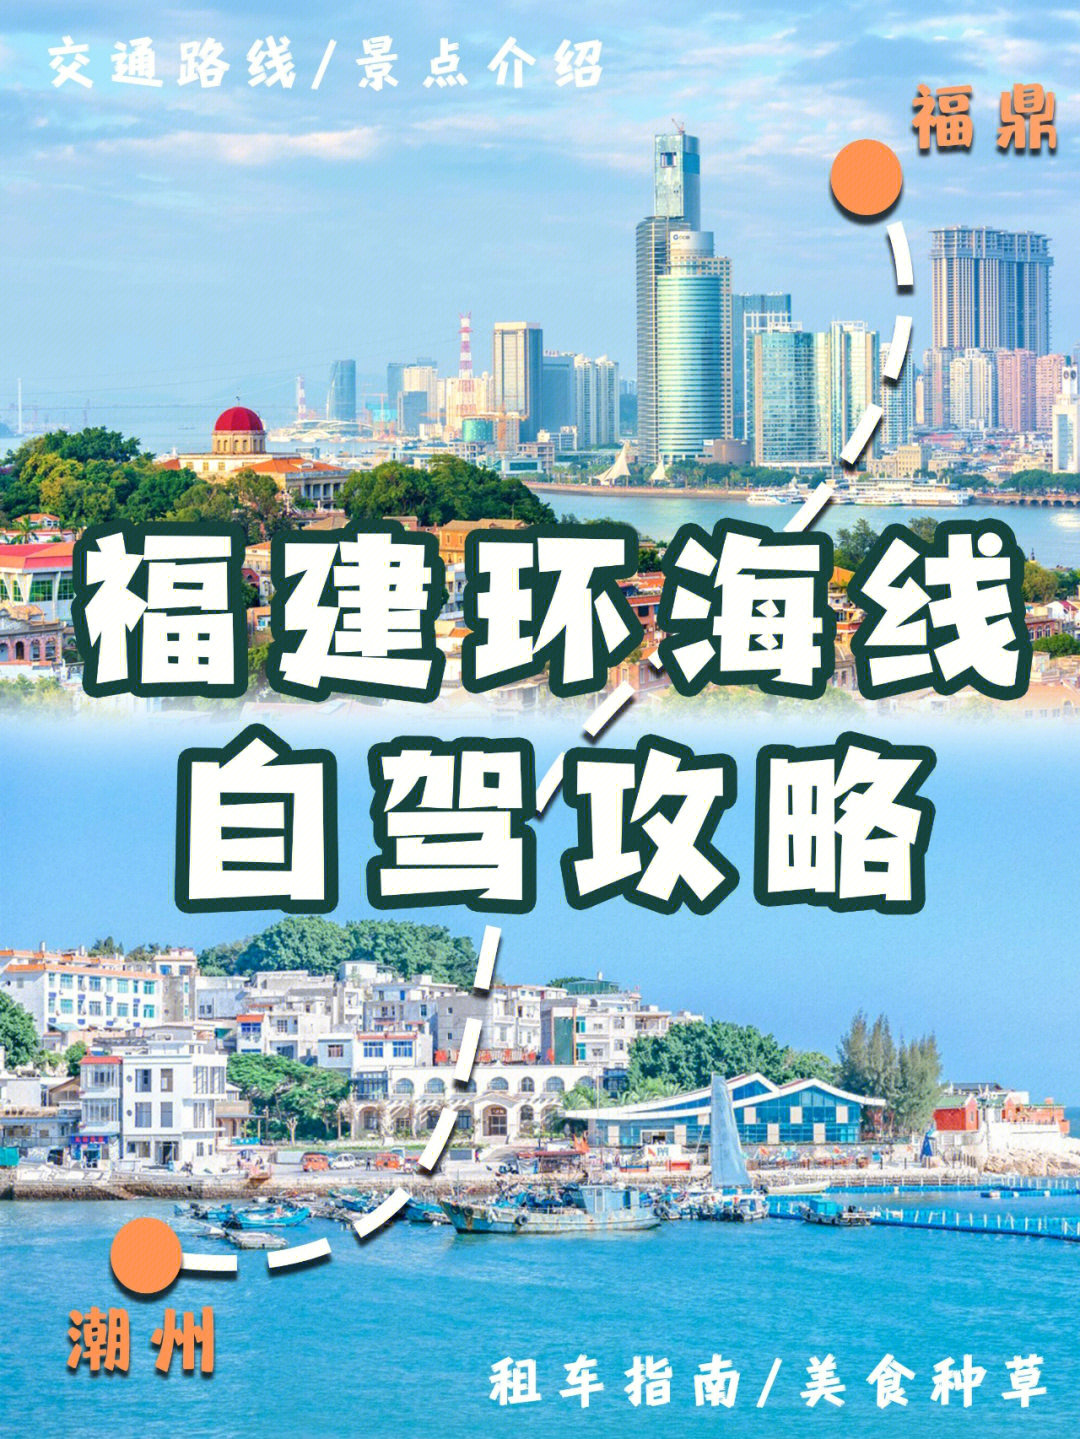 霞浦10路公交车路线图图片